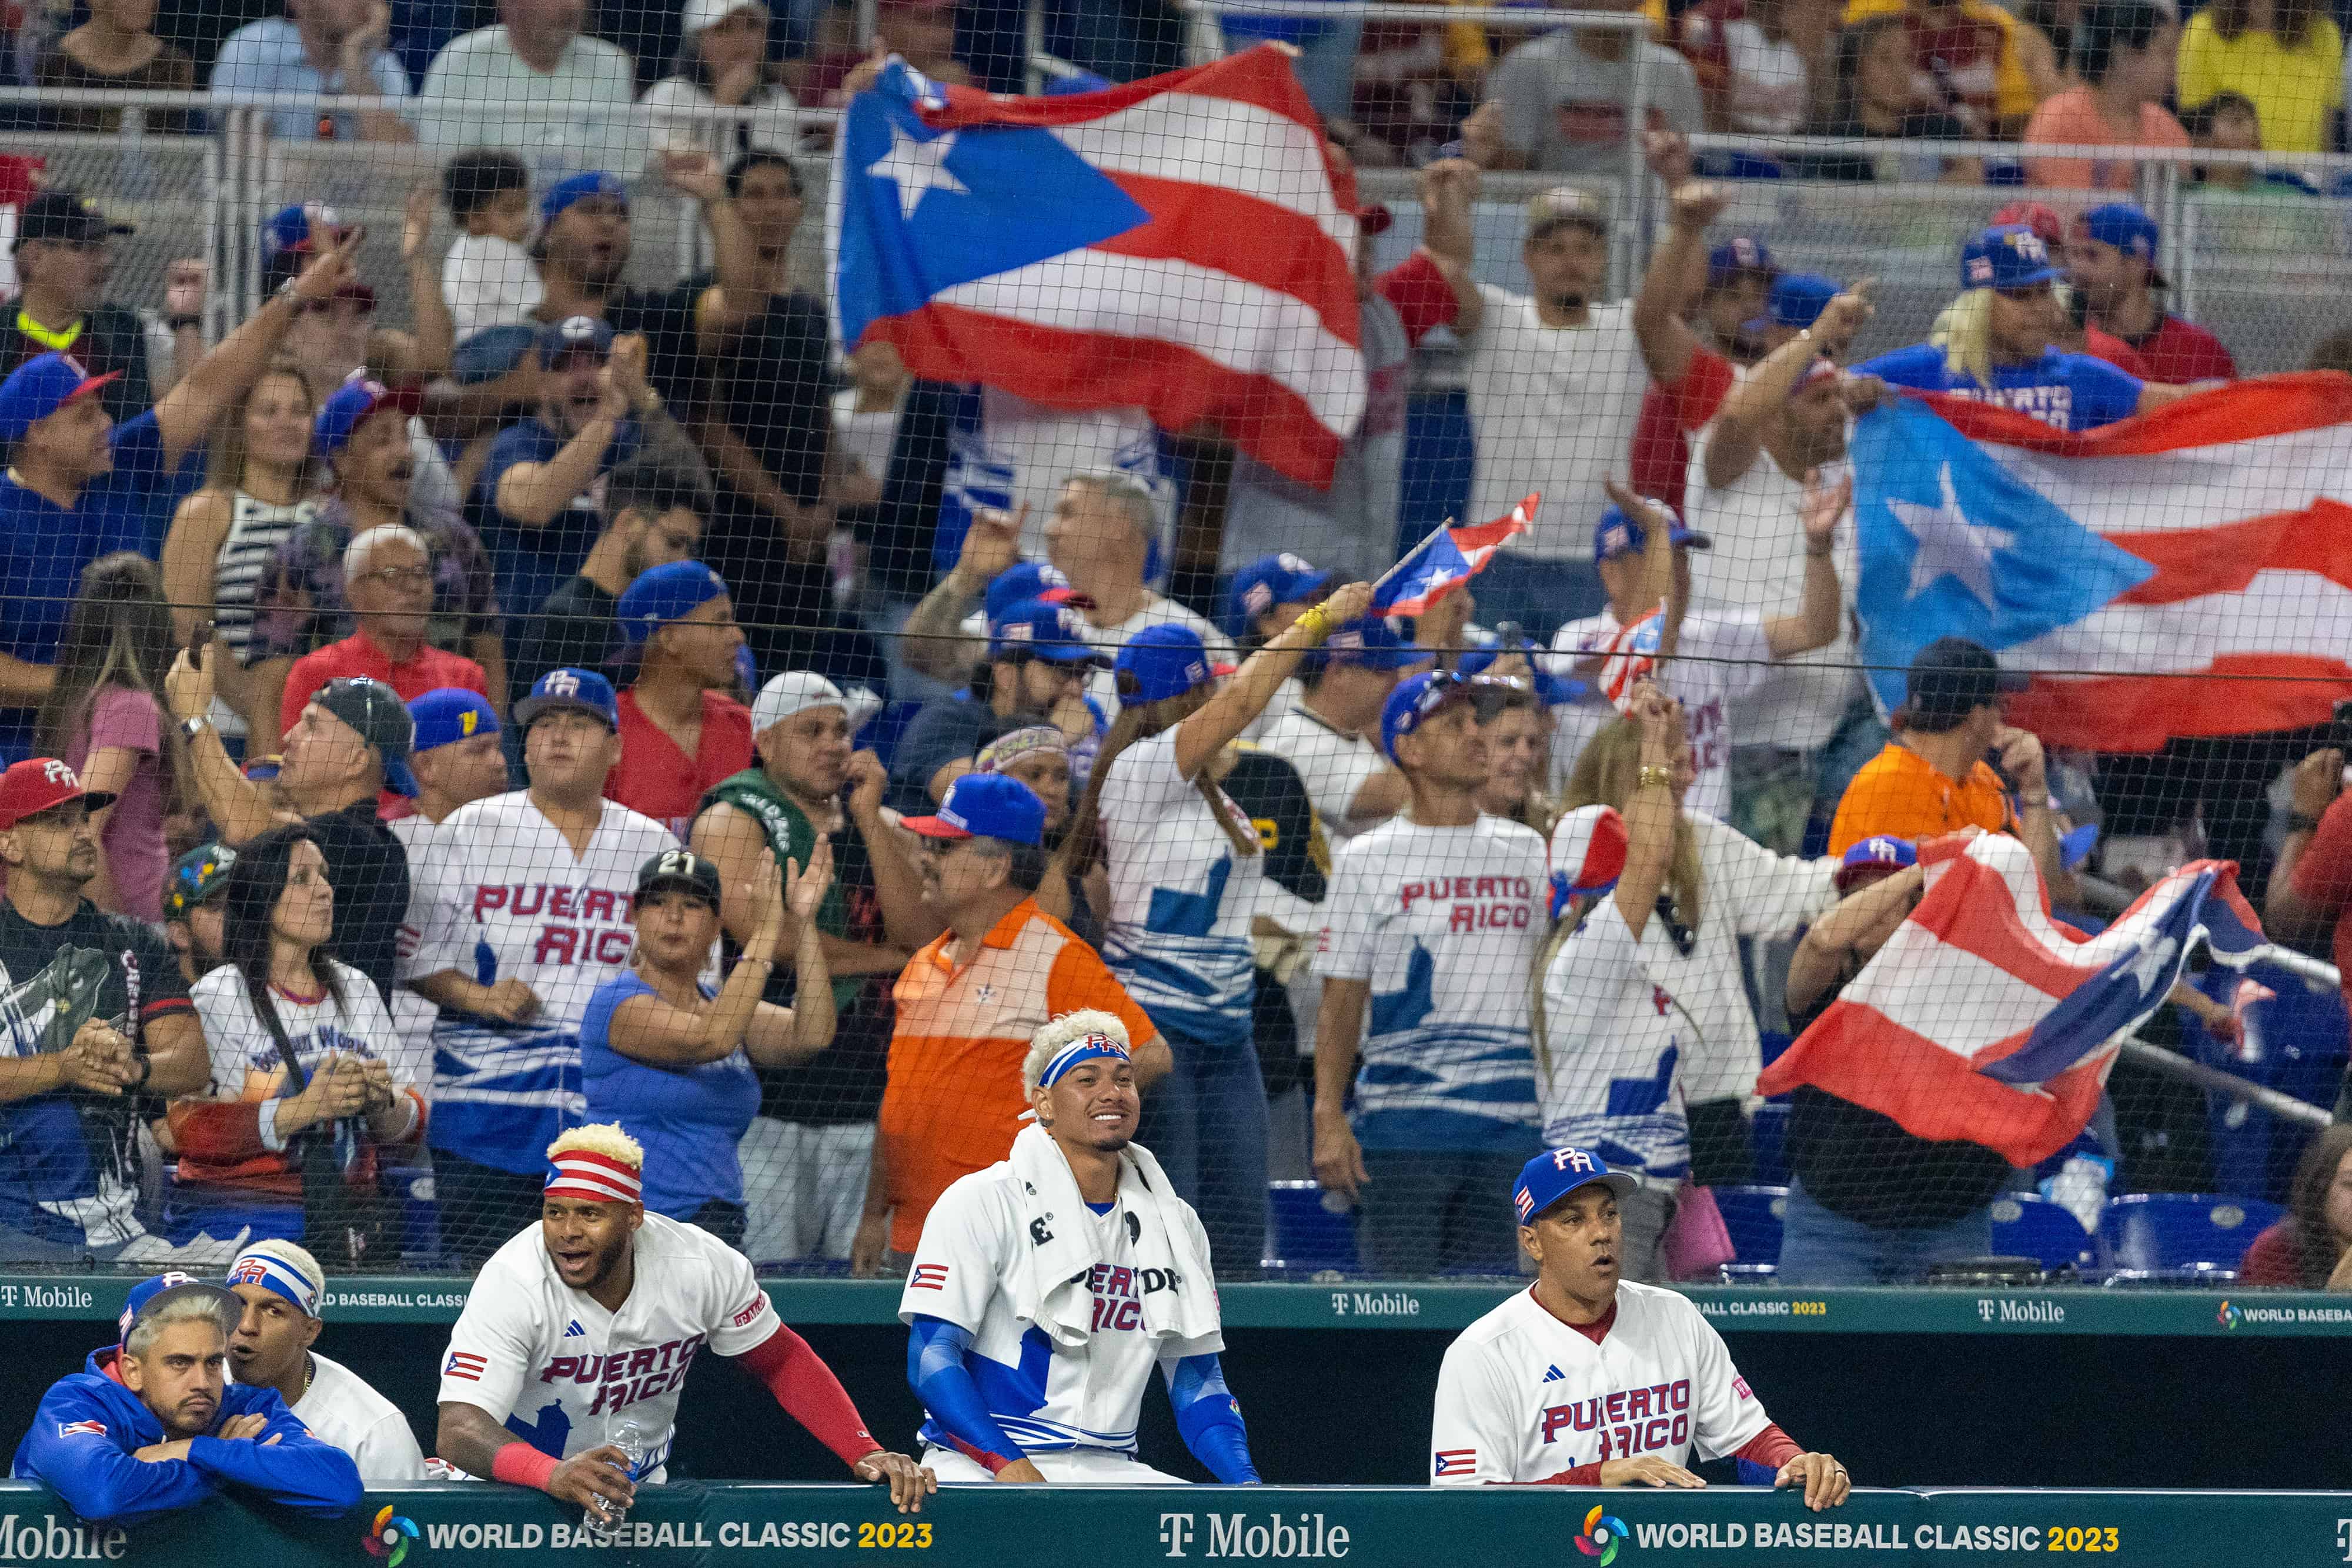 La fanaticada boricua despertó con la reacción de los bates de Puerto Rico que acortaron la diferencia en la pizarra.